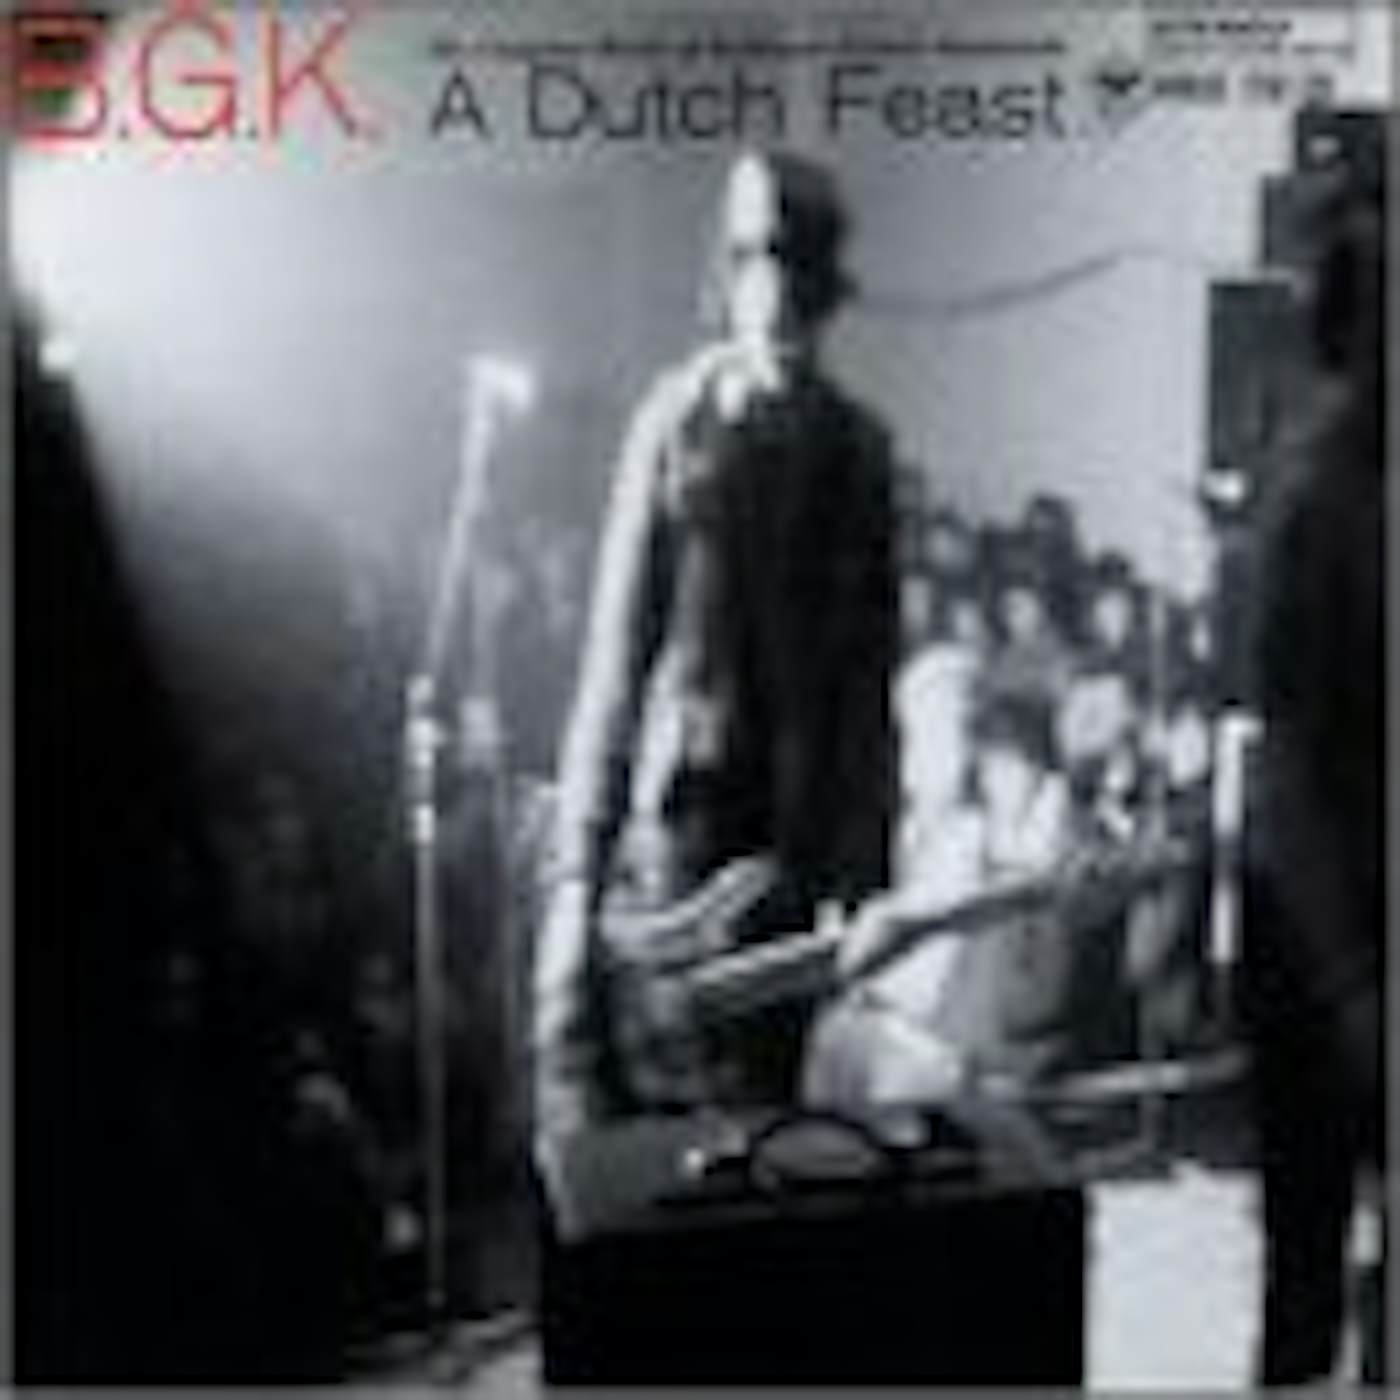 Bgk DUTCH FEAST: COMPLETE WORKS OF BALTHASAR GERARDS Vinyl Record